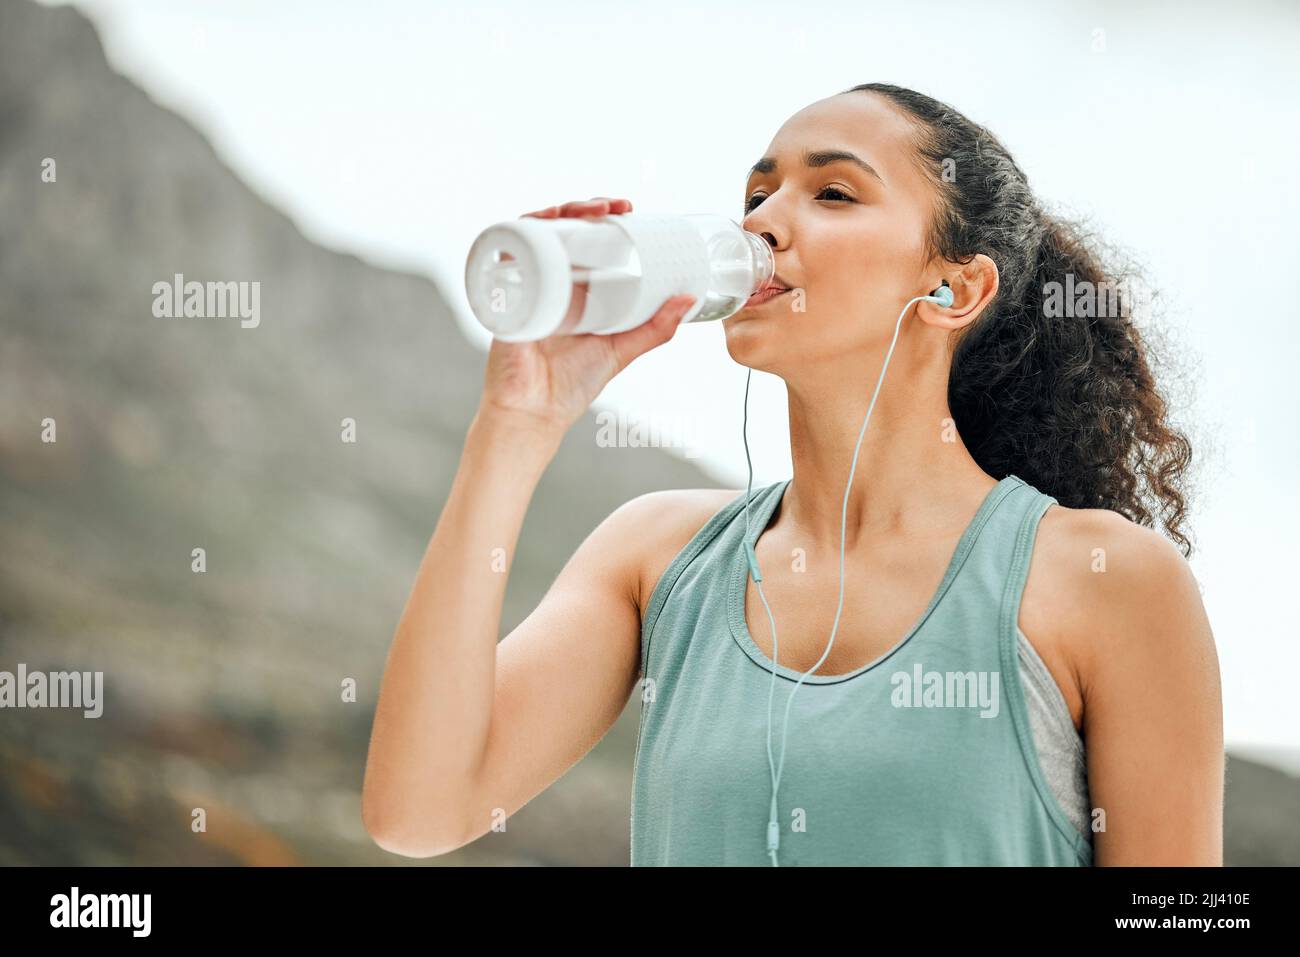 Eine Pause zum Hydrat machen. Eine junge Frau, die eine Pause vom Ausarbeiten, um Wasser zu trinken. Stockfoto